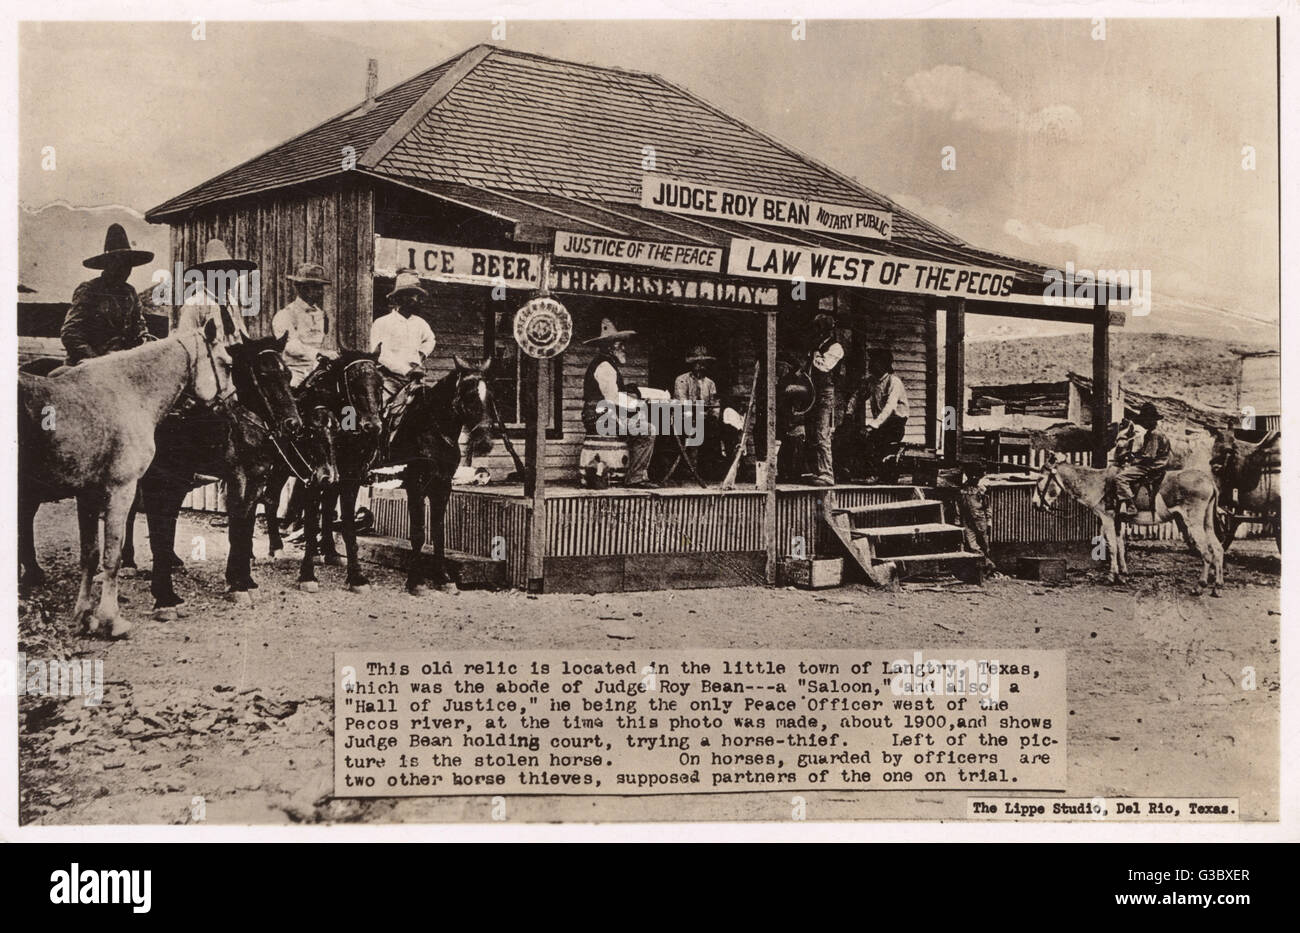 Juge Roy Bean essayant un voleur de chevaux sur le porche de son palais de saloon, dans la petite ville de Langtry, Texas, USA. Sur la gauche de la photo est le cheval volé. Haricot était le seul agent de la paix à l'ouest de la Pecos River en ce moment. Date : vers 19 Banque D'Images